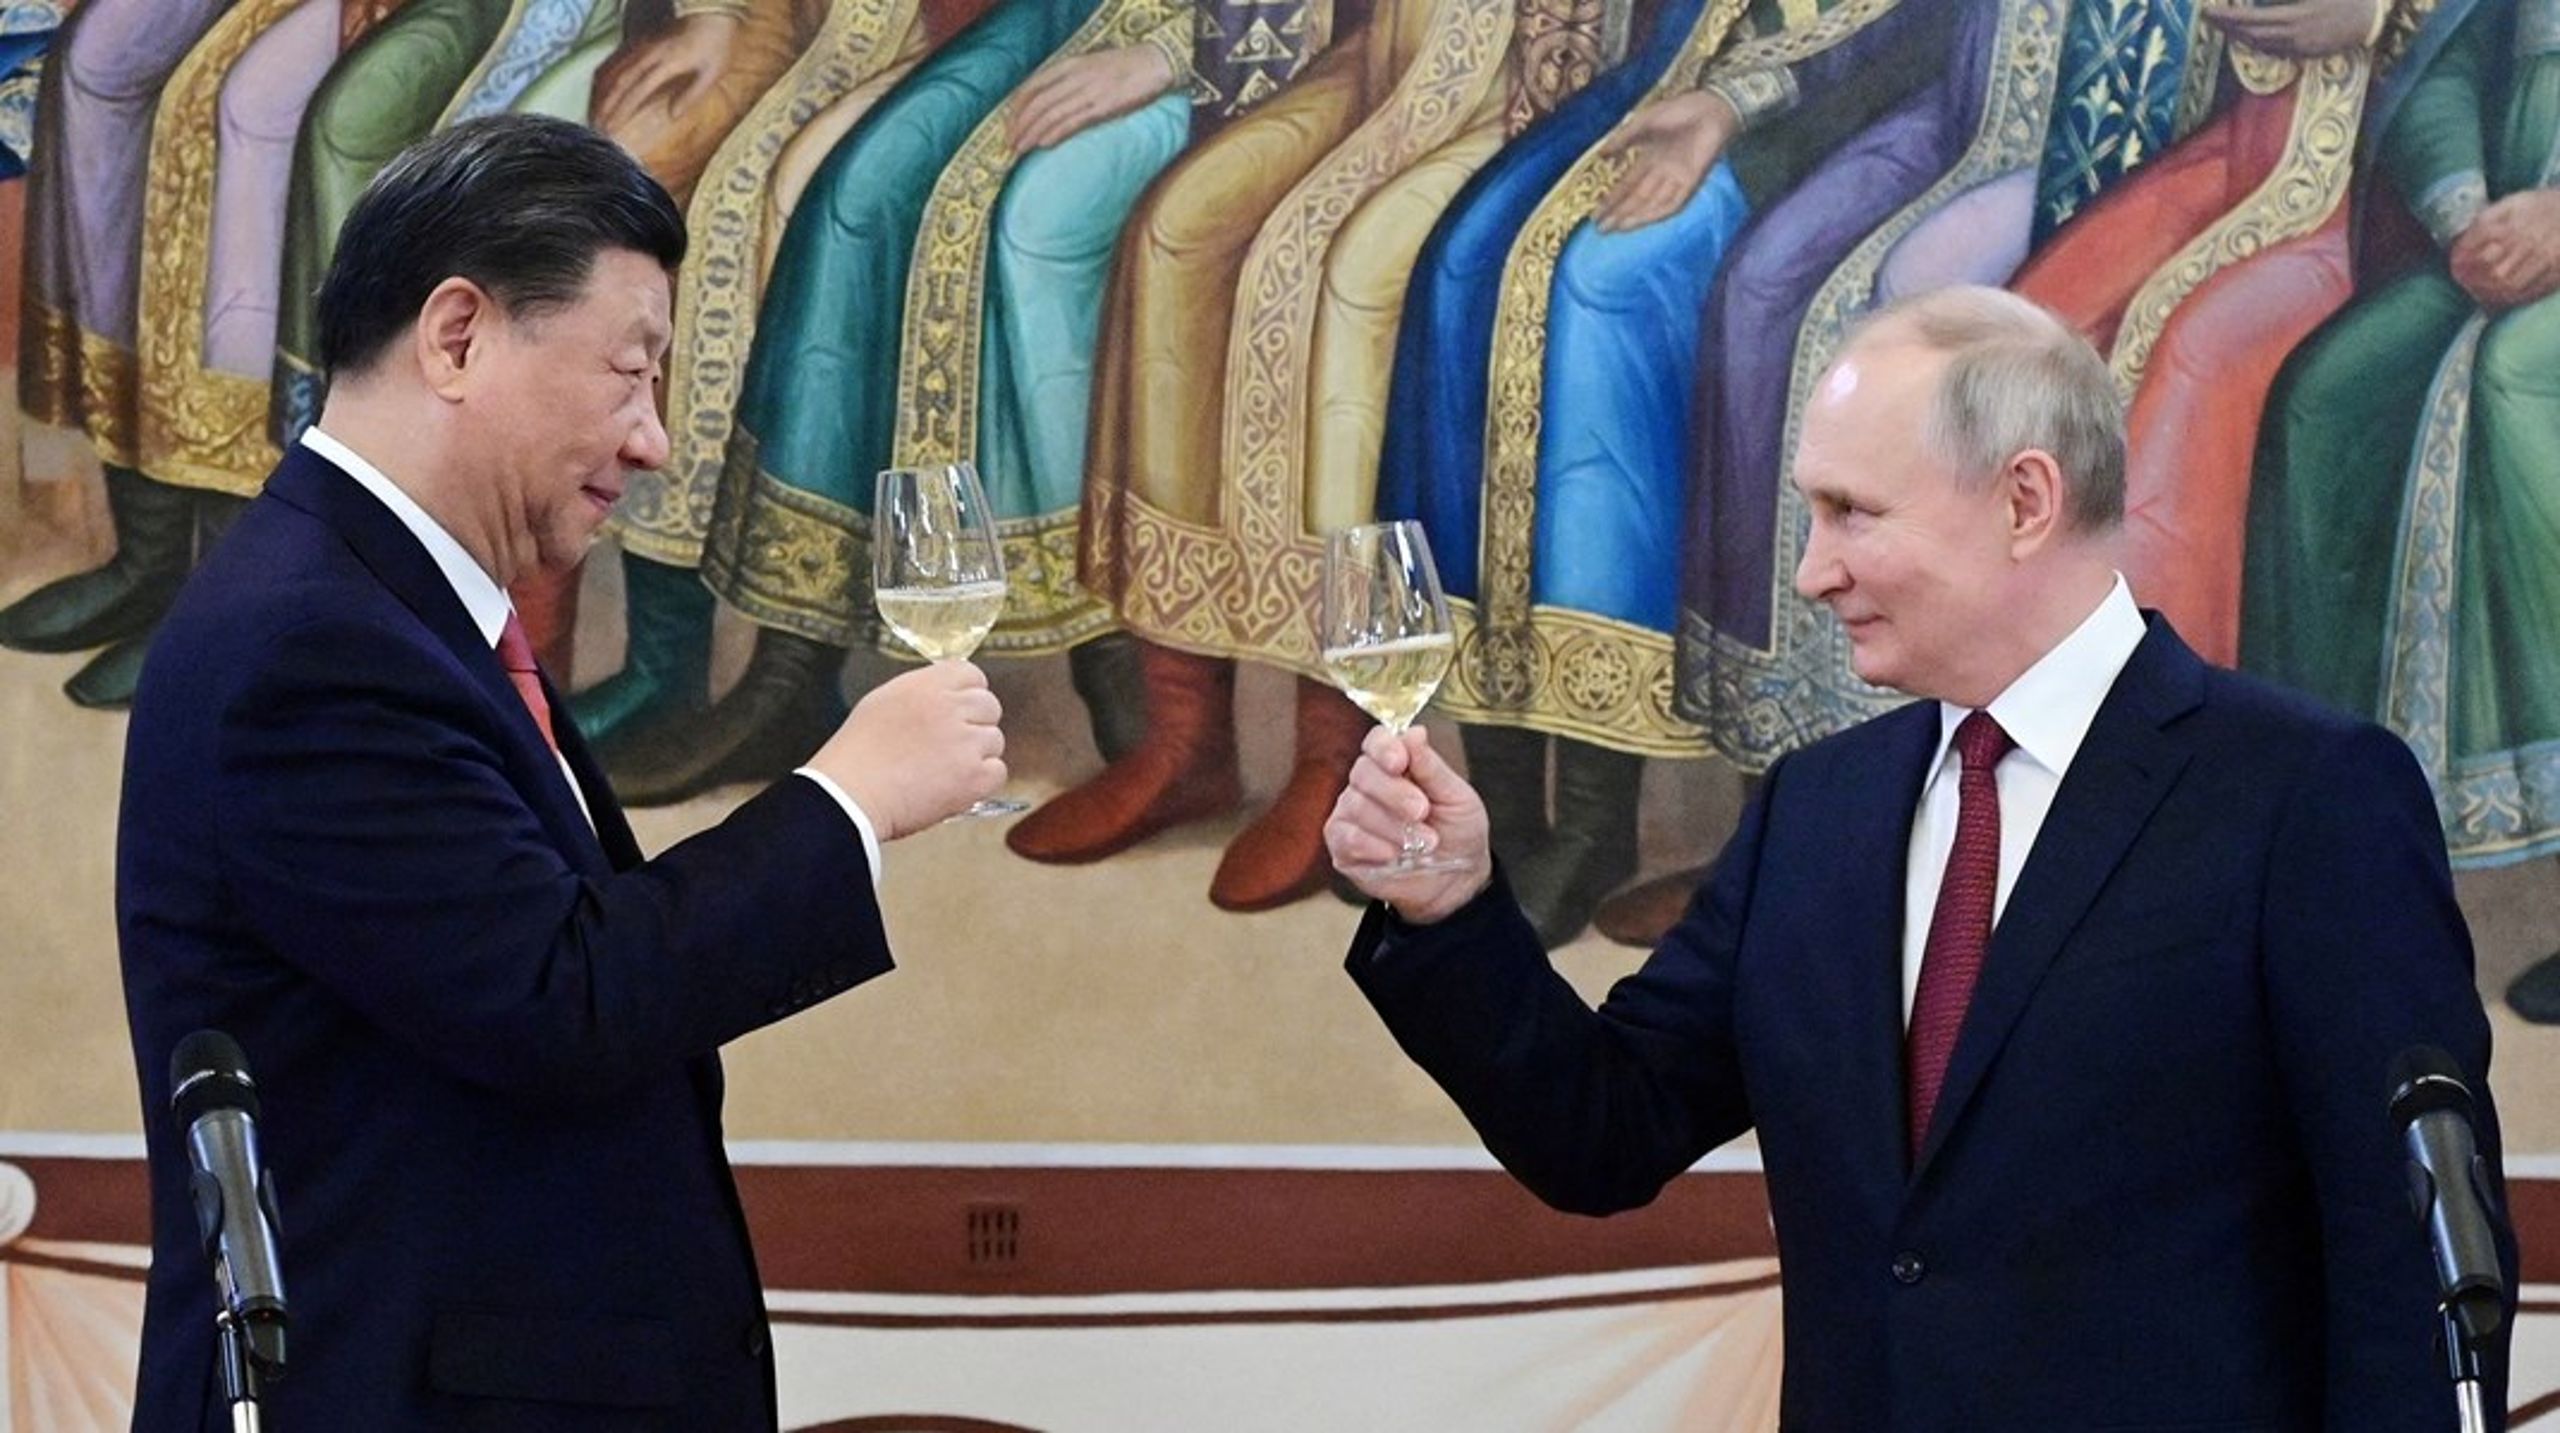 De to ledere Xi og Putin har meget til fælles. De er jævnaldrenede, har prøvet op- og nedture, og så er de begge&nbsp;lykkedes med at nå magtens top og sikret sig et - i praksis - livsvarigt mandat, skriver Jonas Parello-Plesner.